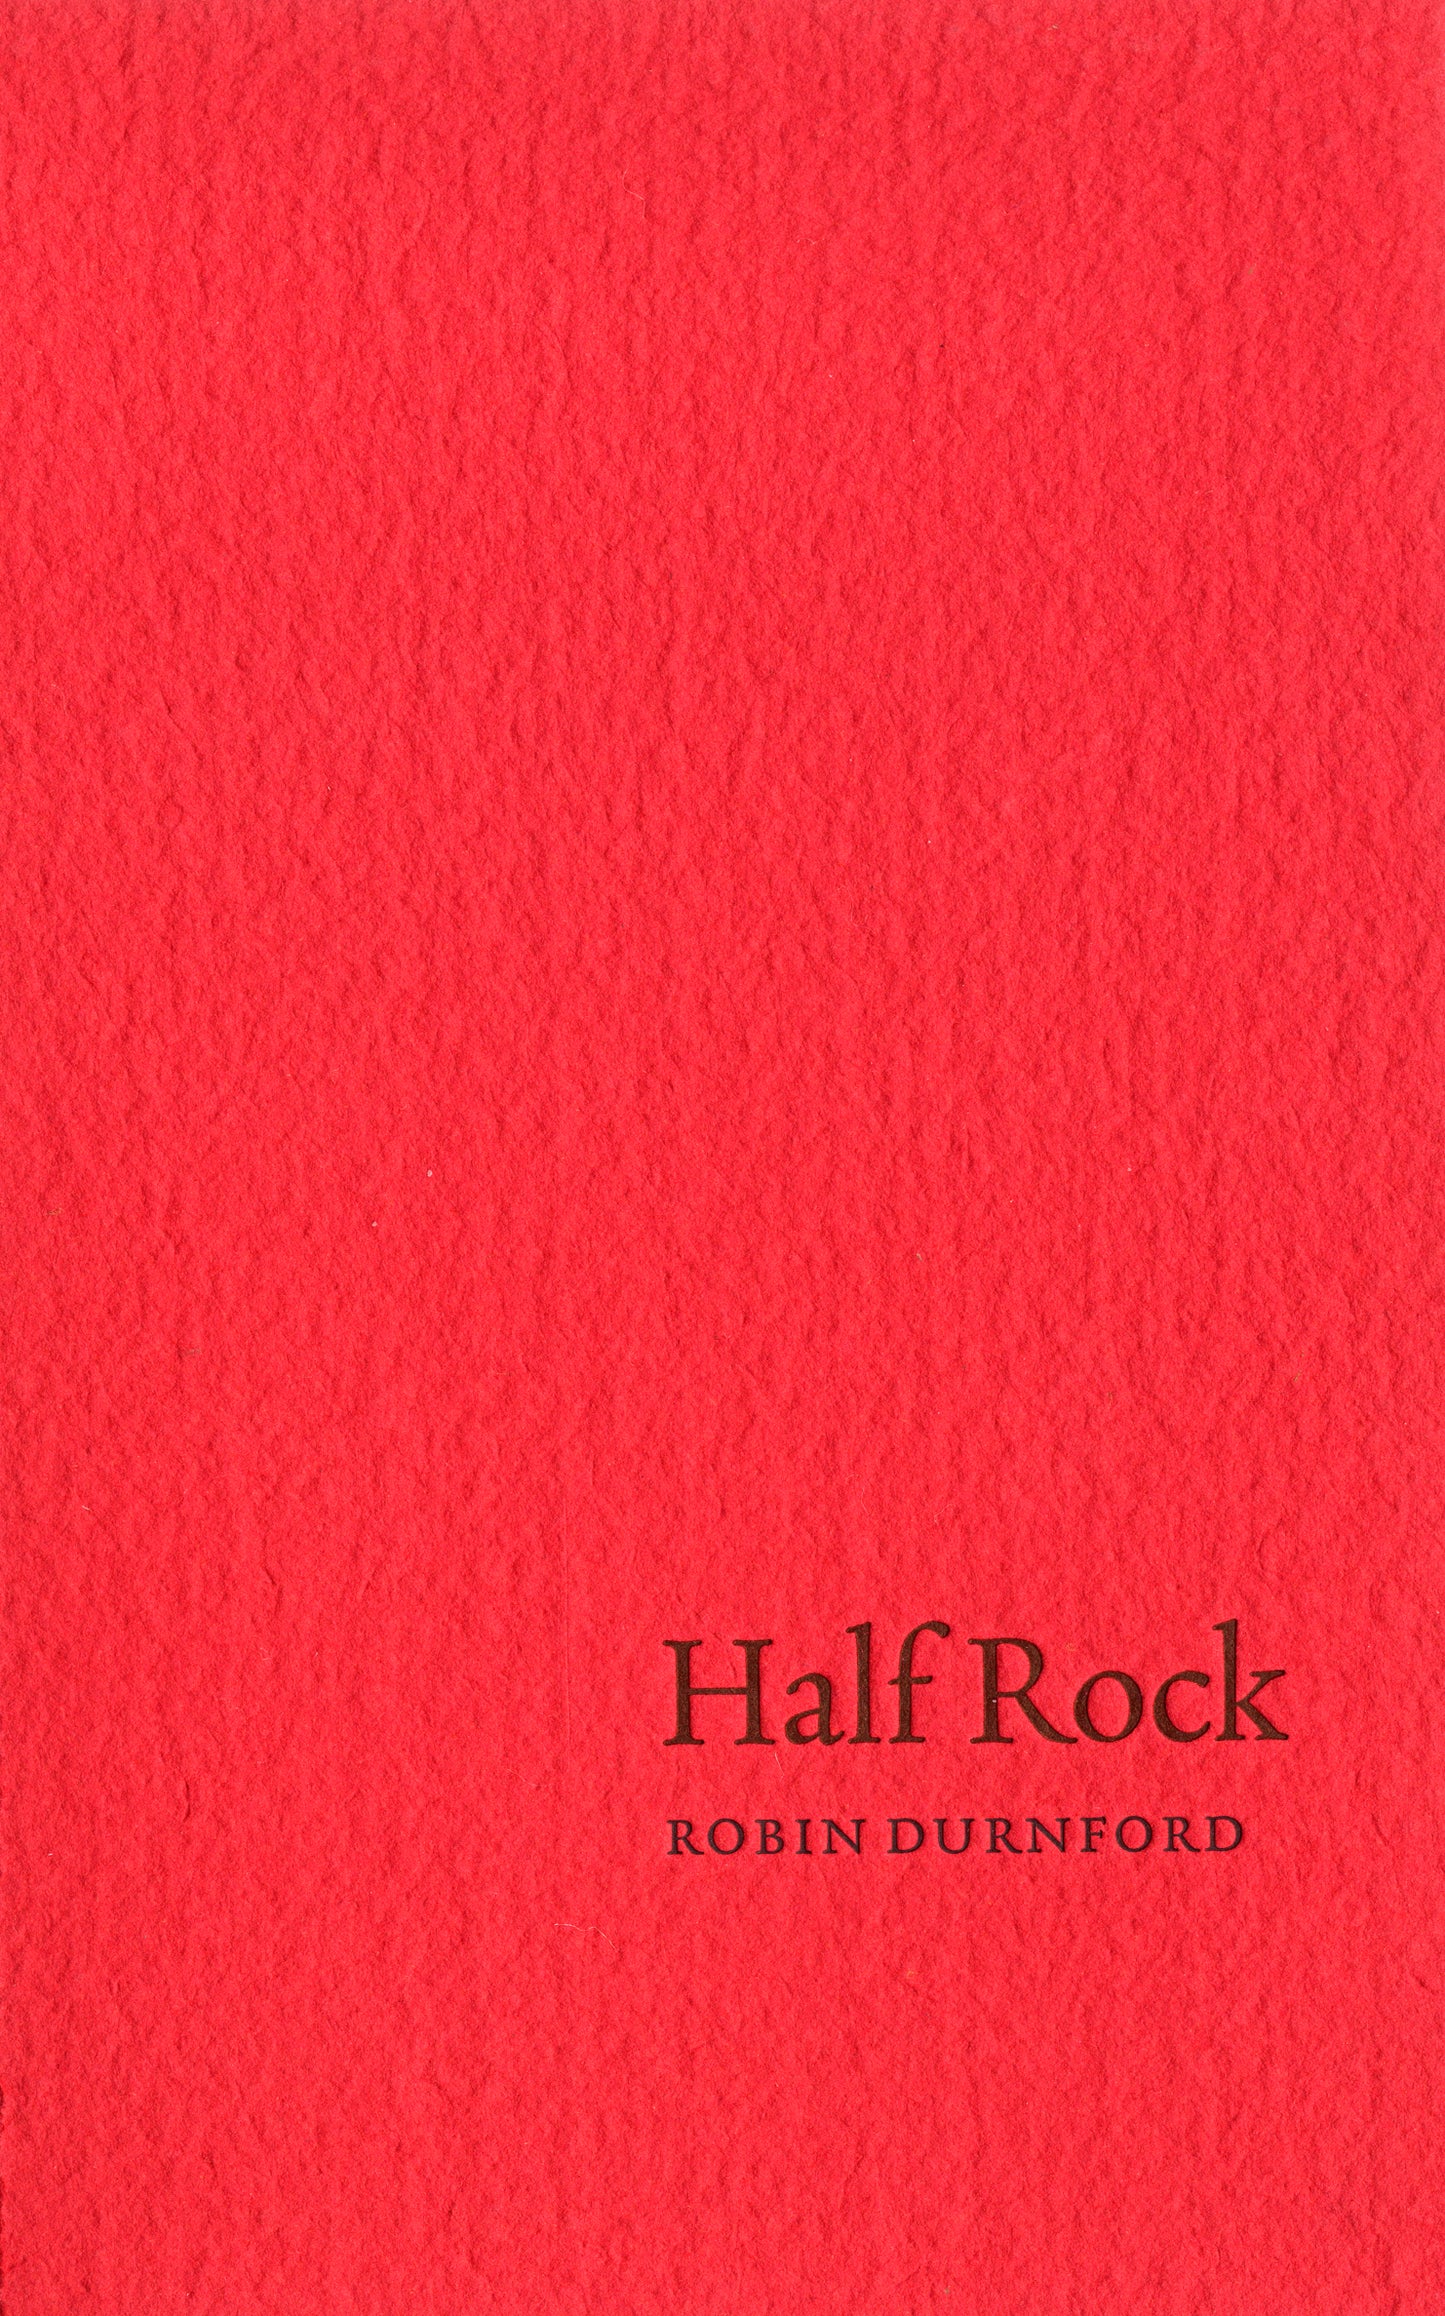 Half Rock